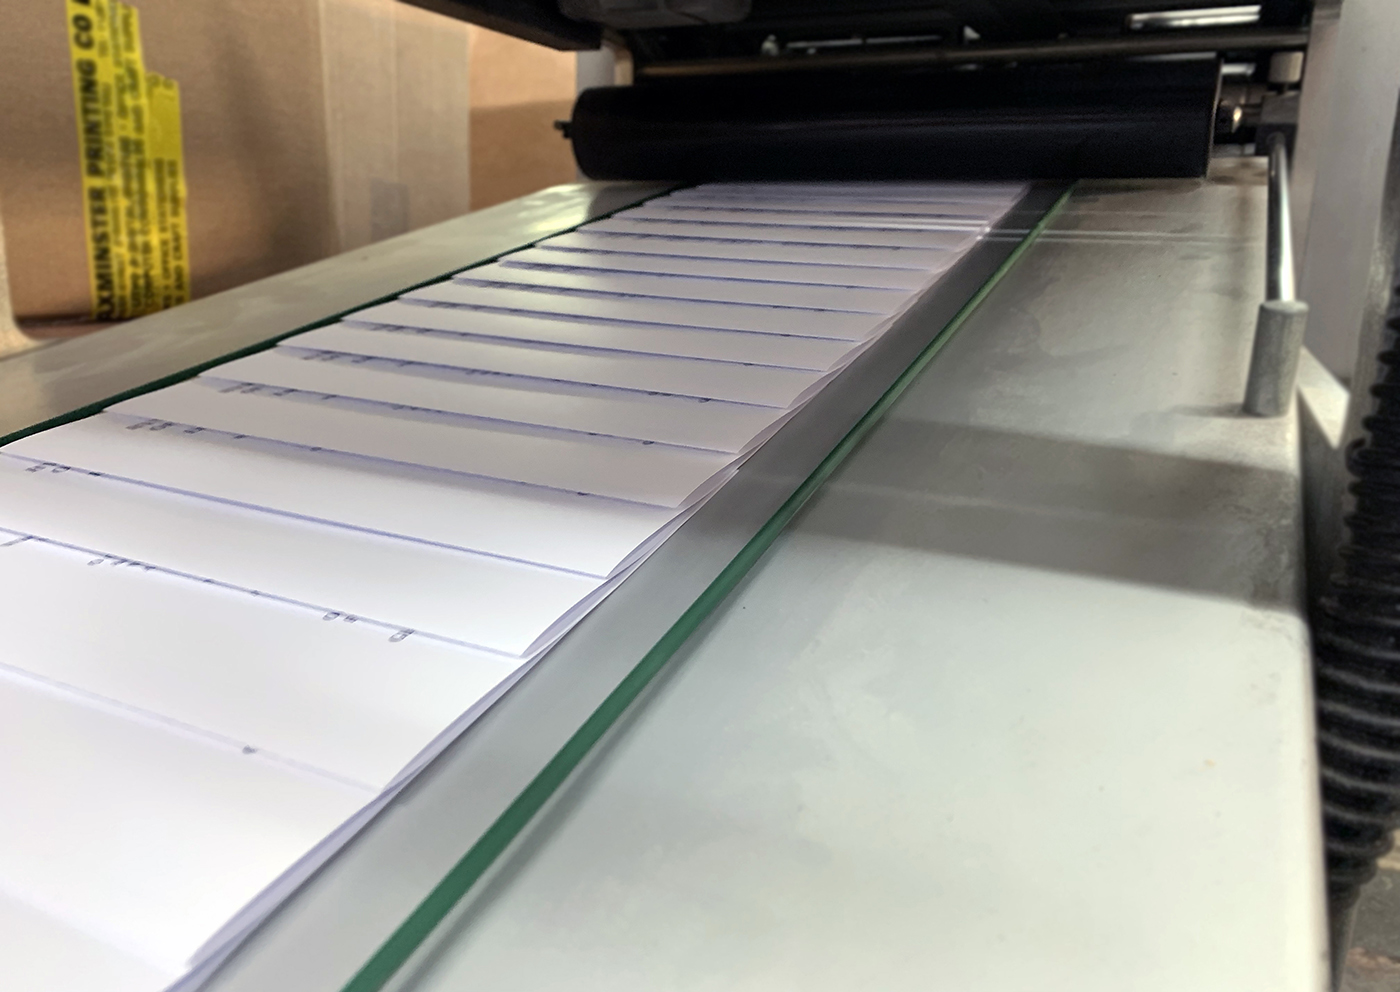 Axminster Printing Folder